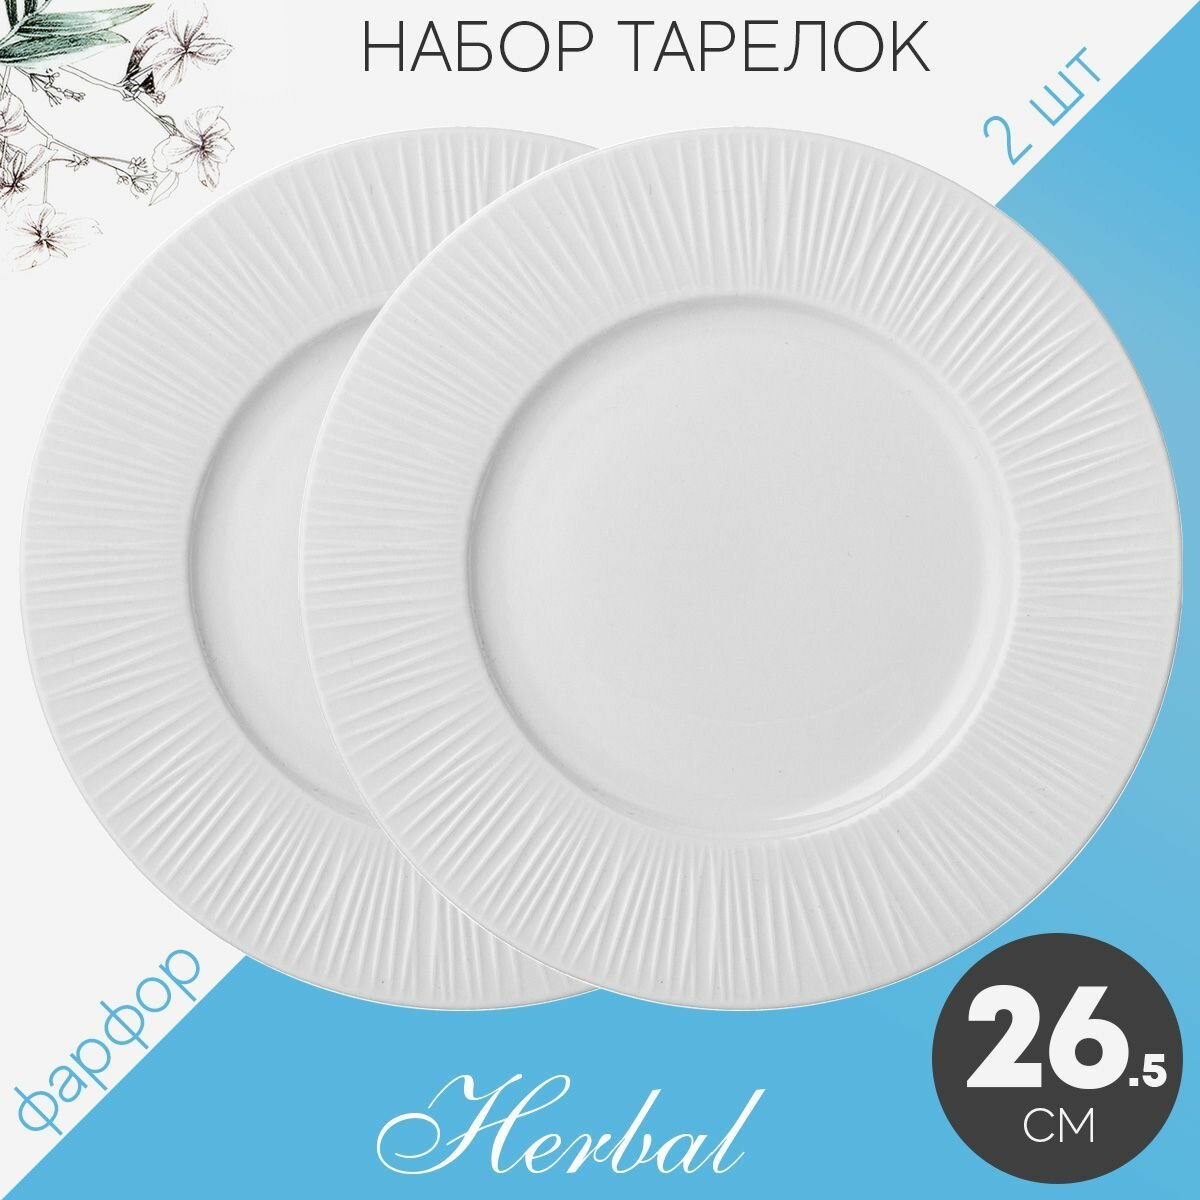 Набор тарелок сервировочных обеденных 26.5 см на 2 персоны Lefard Herbal, фарфор, столовые мелкие, закусочные белые, 2 шт набор посуды